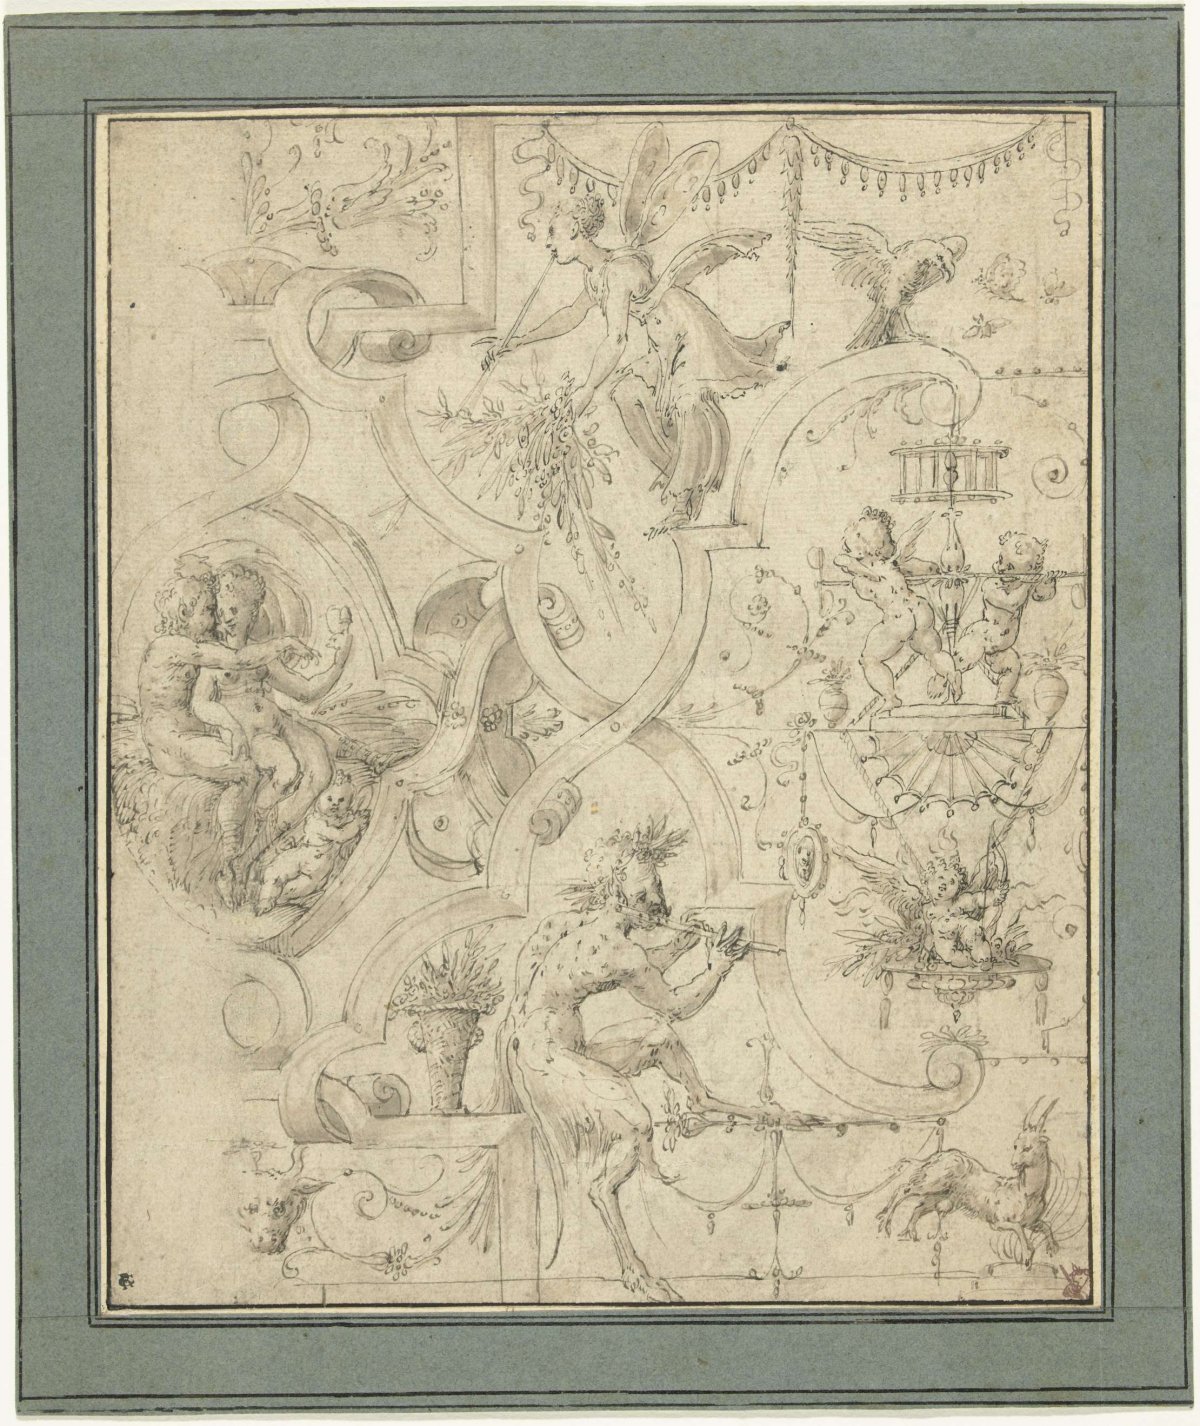 Grotesken, Jean Coussin de Oude, c. 1550 - c. 1599